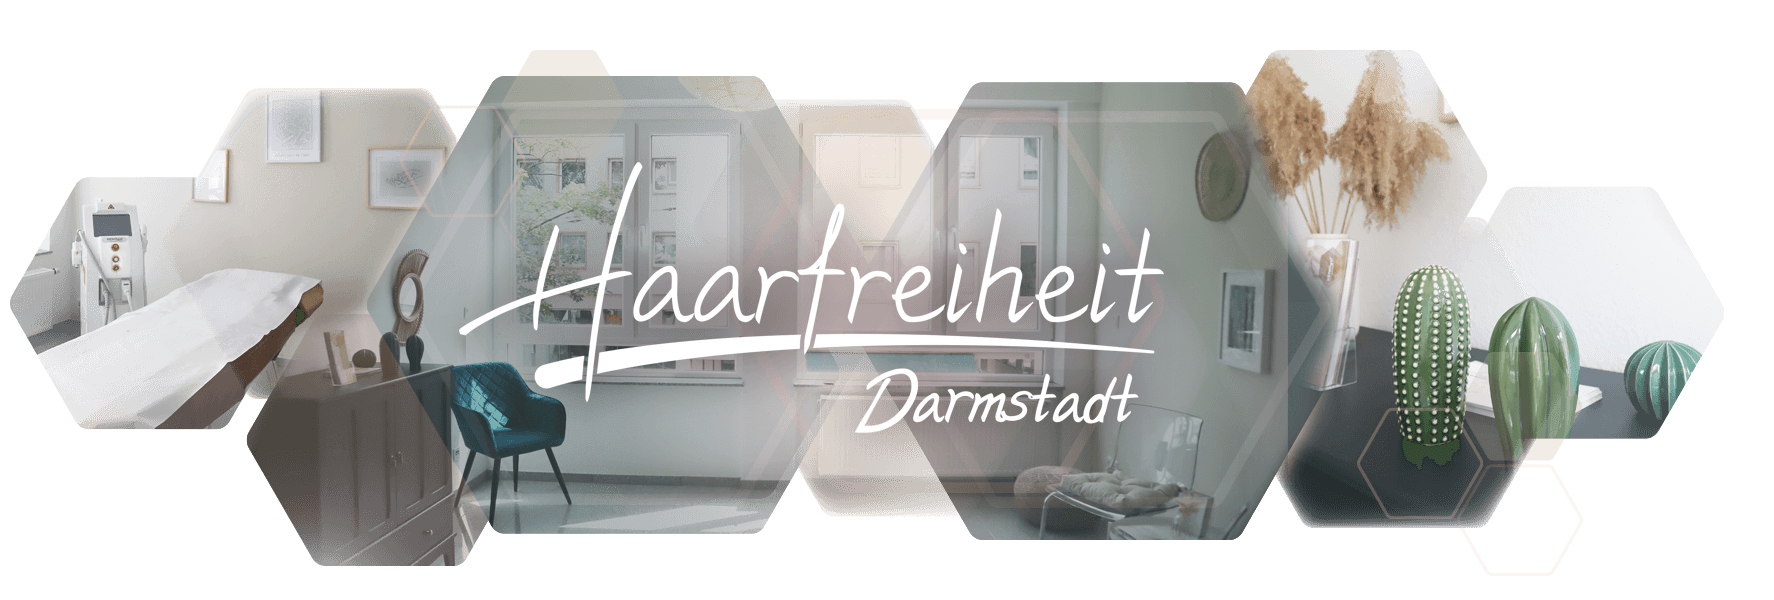 Fotos Einrichtung Haarfreiheit Darmstadt